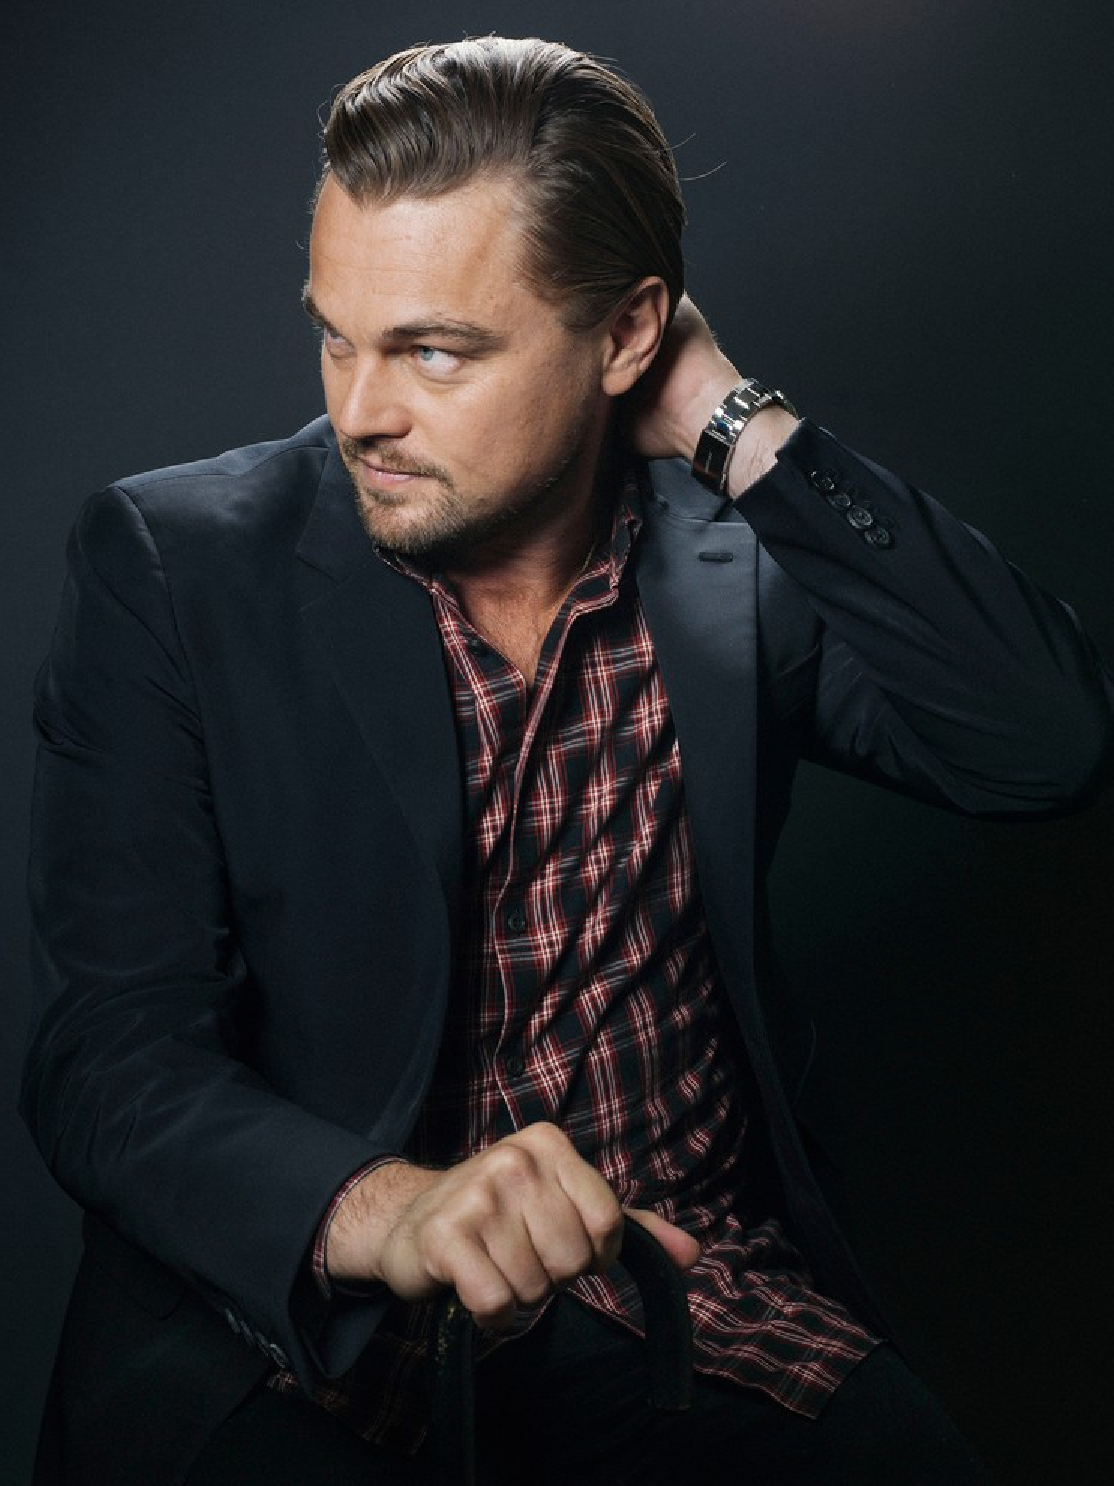 Best Popular Celebrities: Most Popular Celebrities Leonardo DiCaprio HD